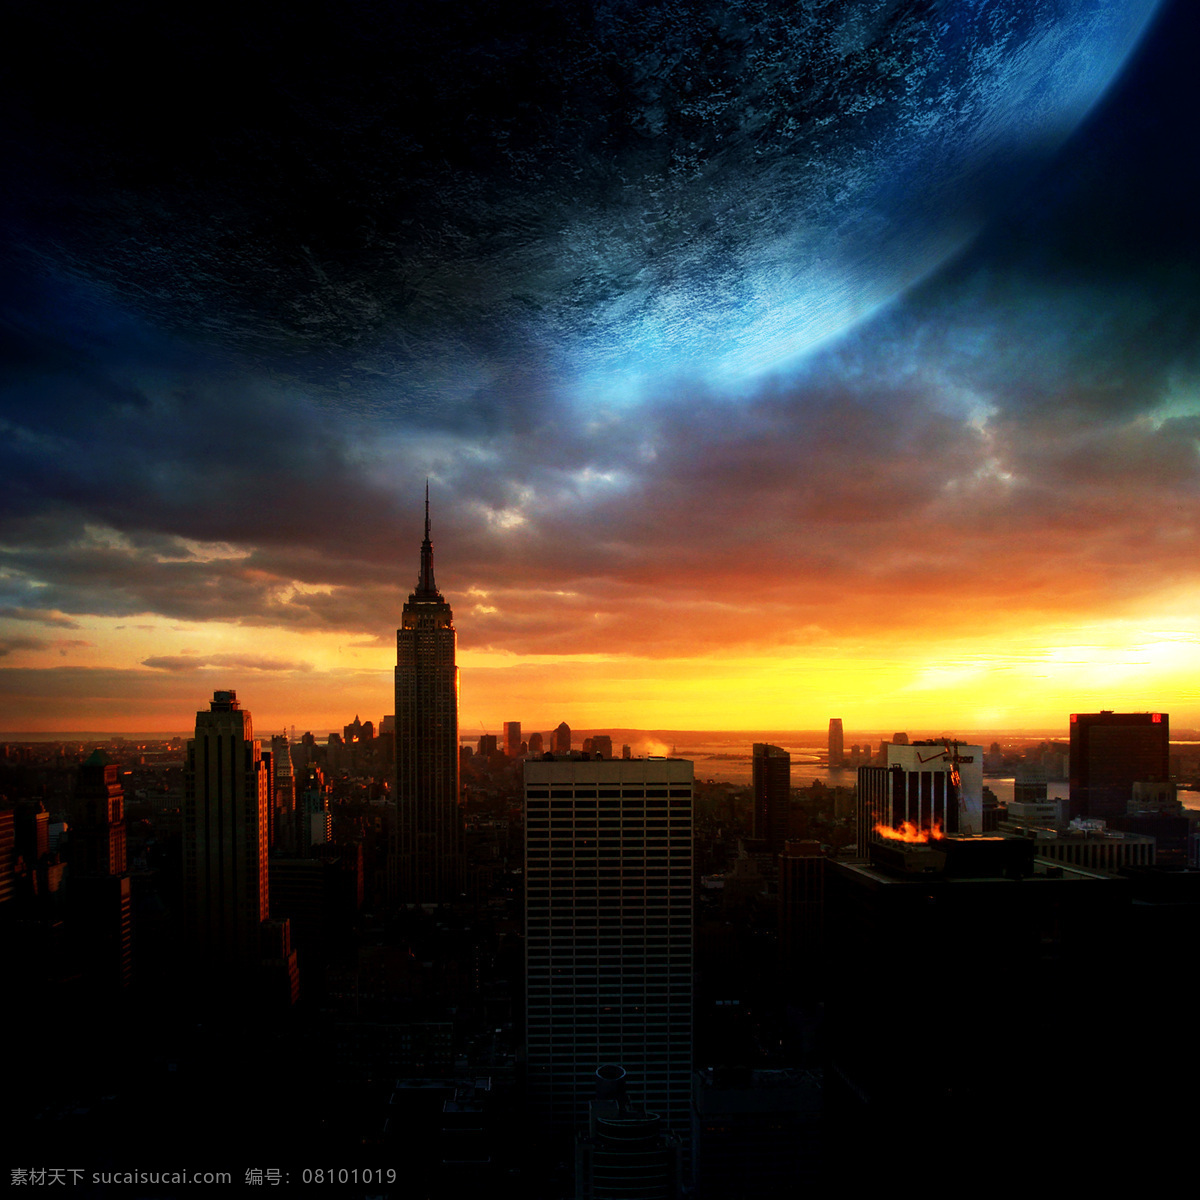 星球 城市 地球 科学研究 魔幻 奇幻 现代科技 星际 宇宙 云彩 星空 矢量图